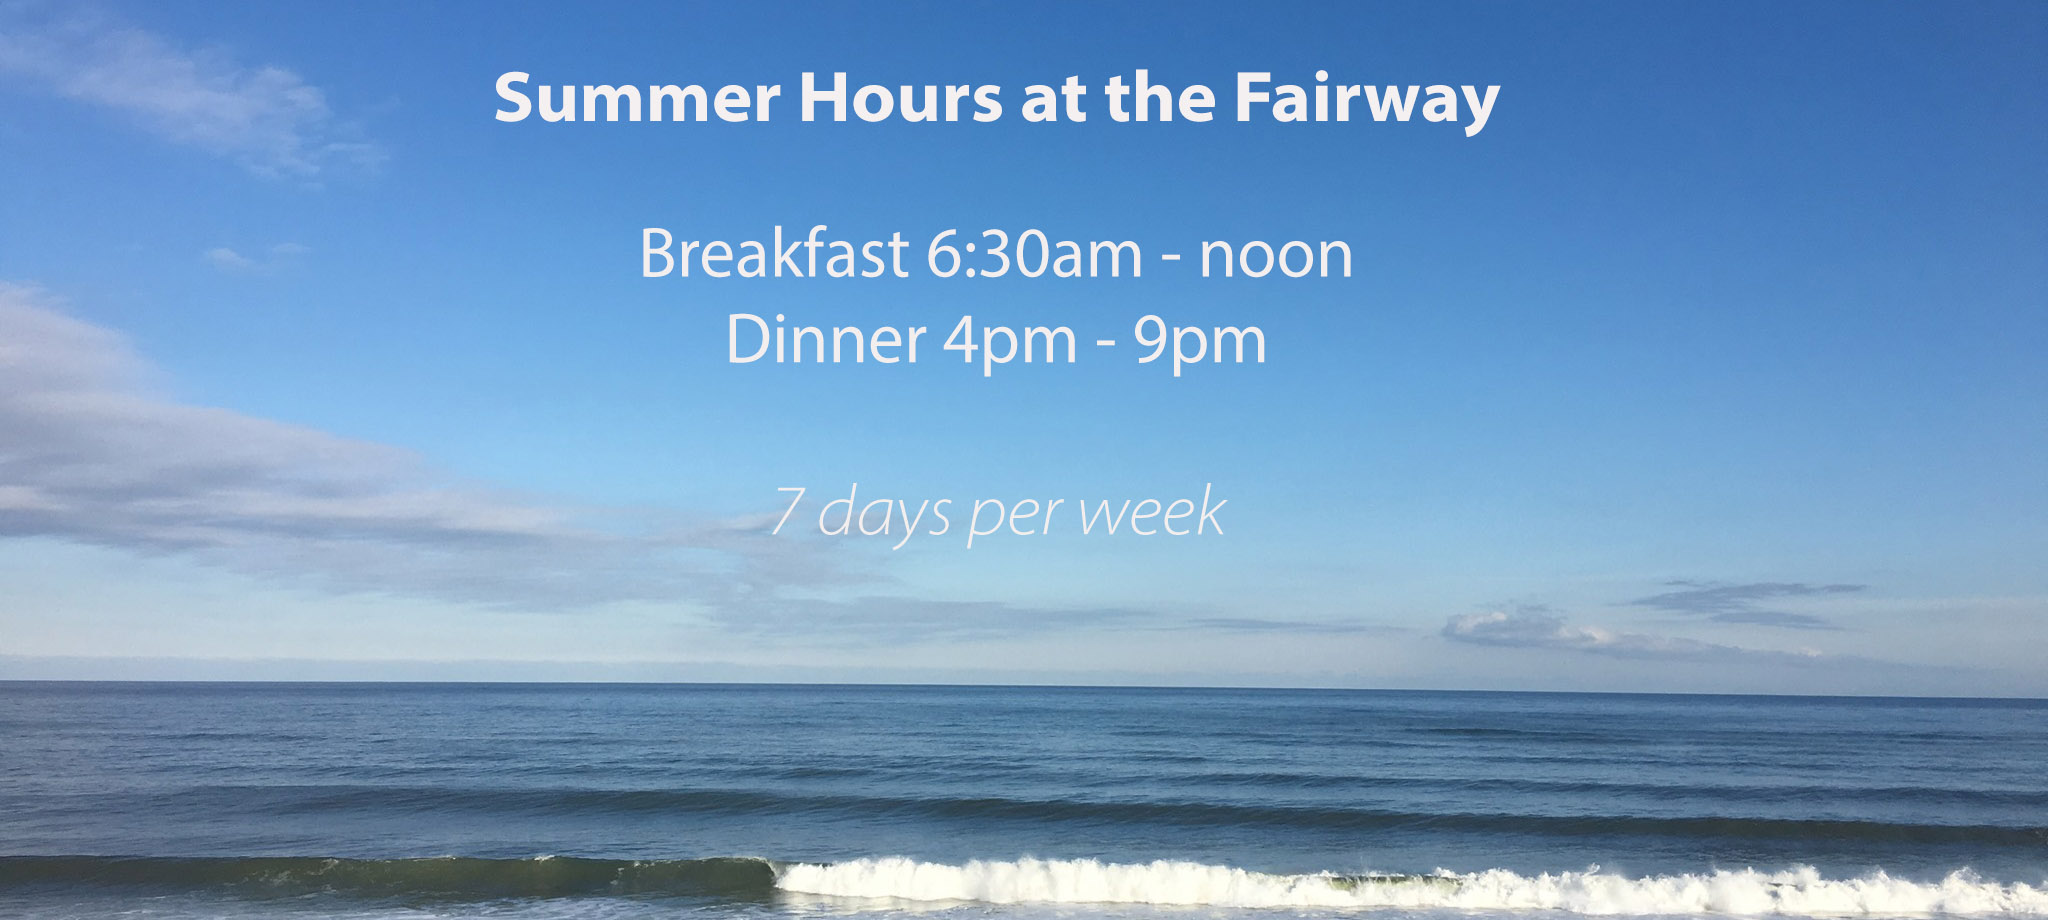 Summer hours at Fairway Restaurant